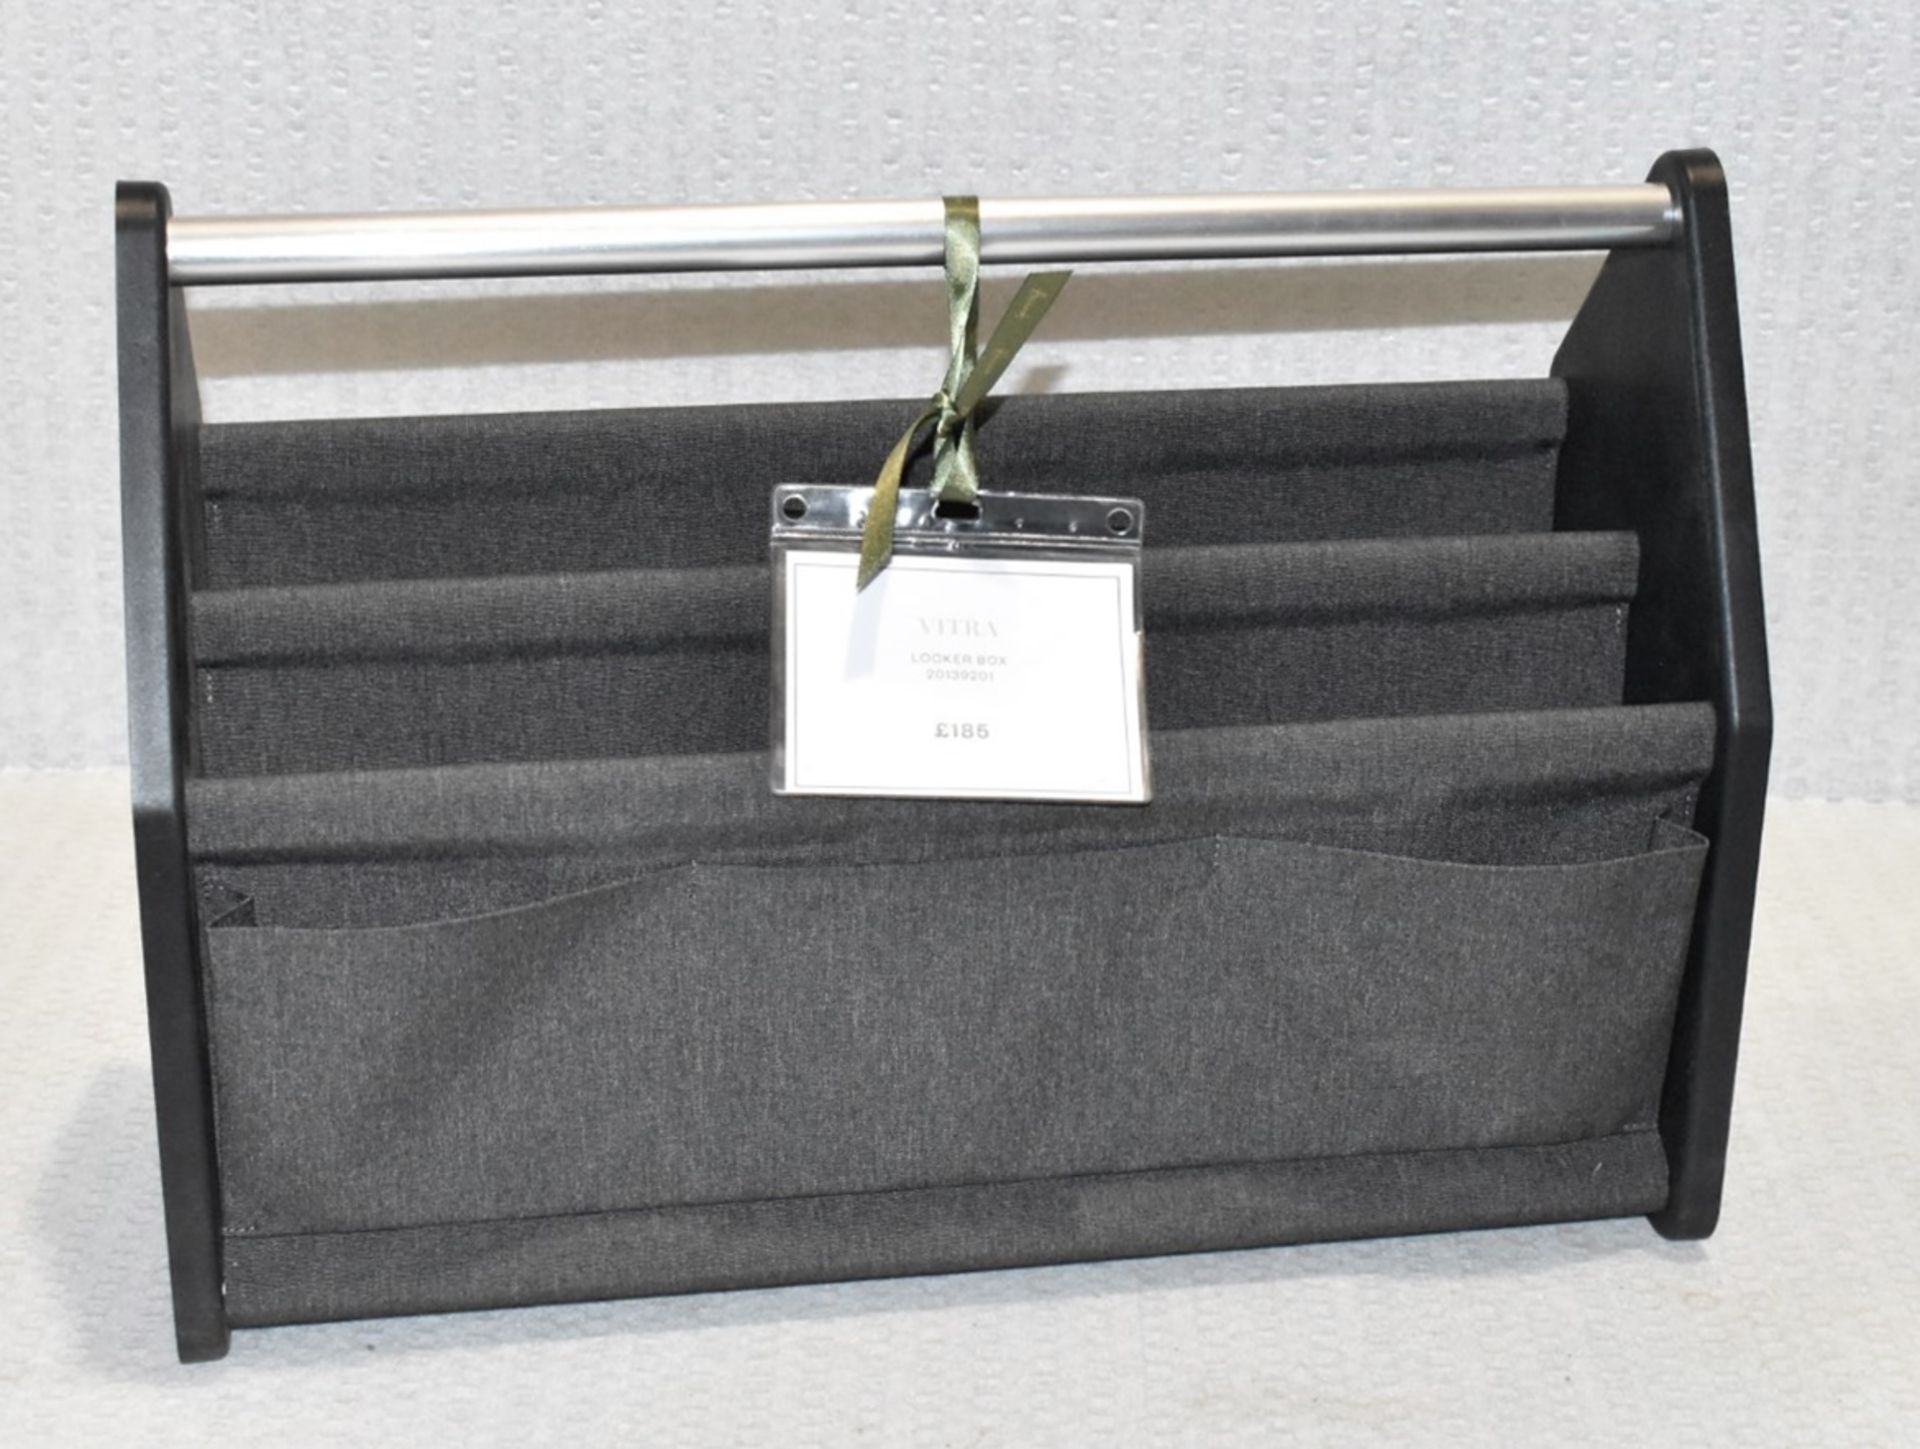 1 x VITRA 'Locker Box' Designer Portable Desk Organiser in Black & Grey - Original Price £185.00 - Image 4 of 6